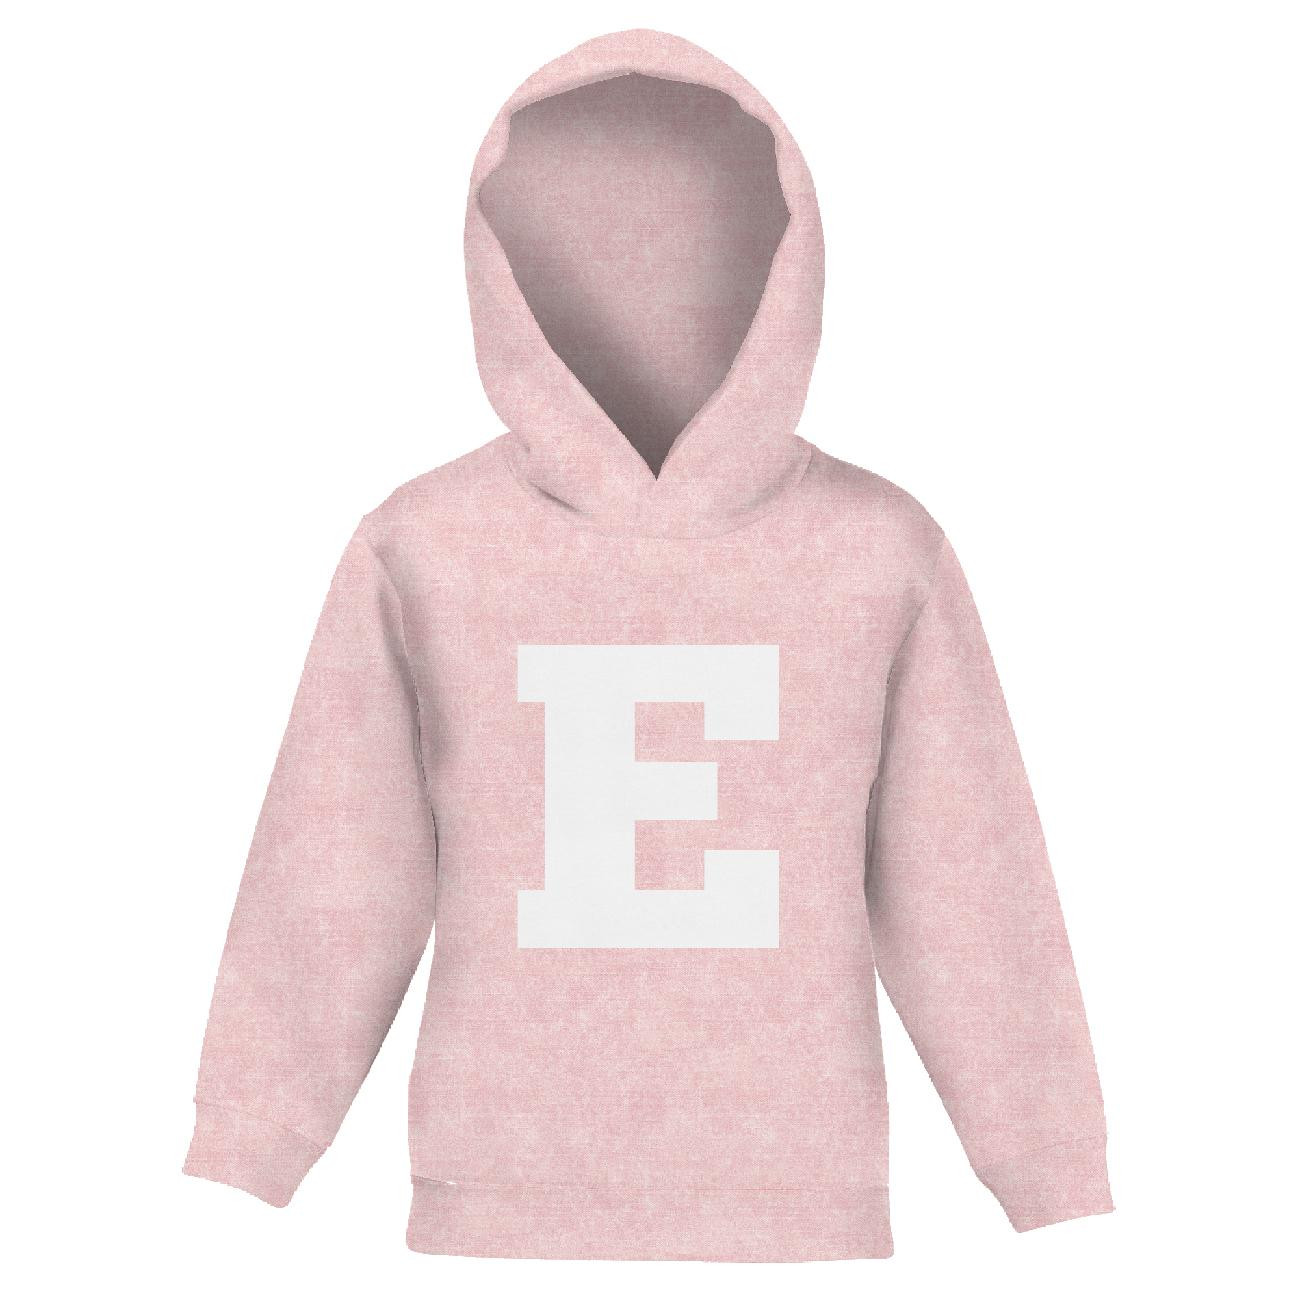 KID'S HOODIE (ALEX) - "E" / acid wash pale pink - sewing set